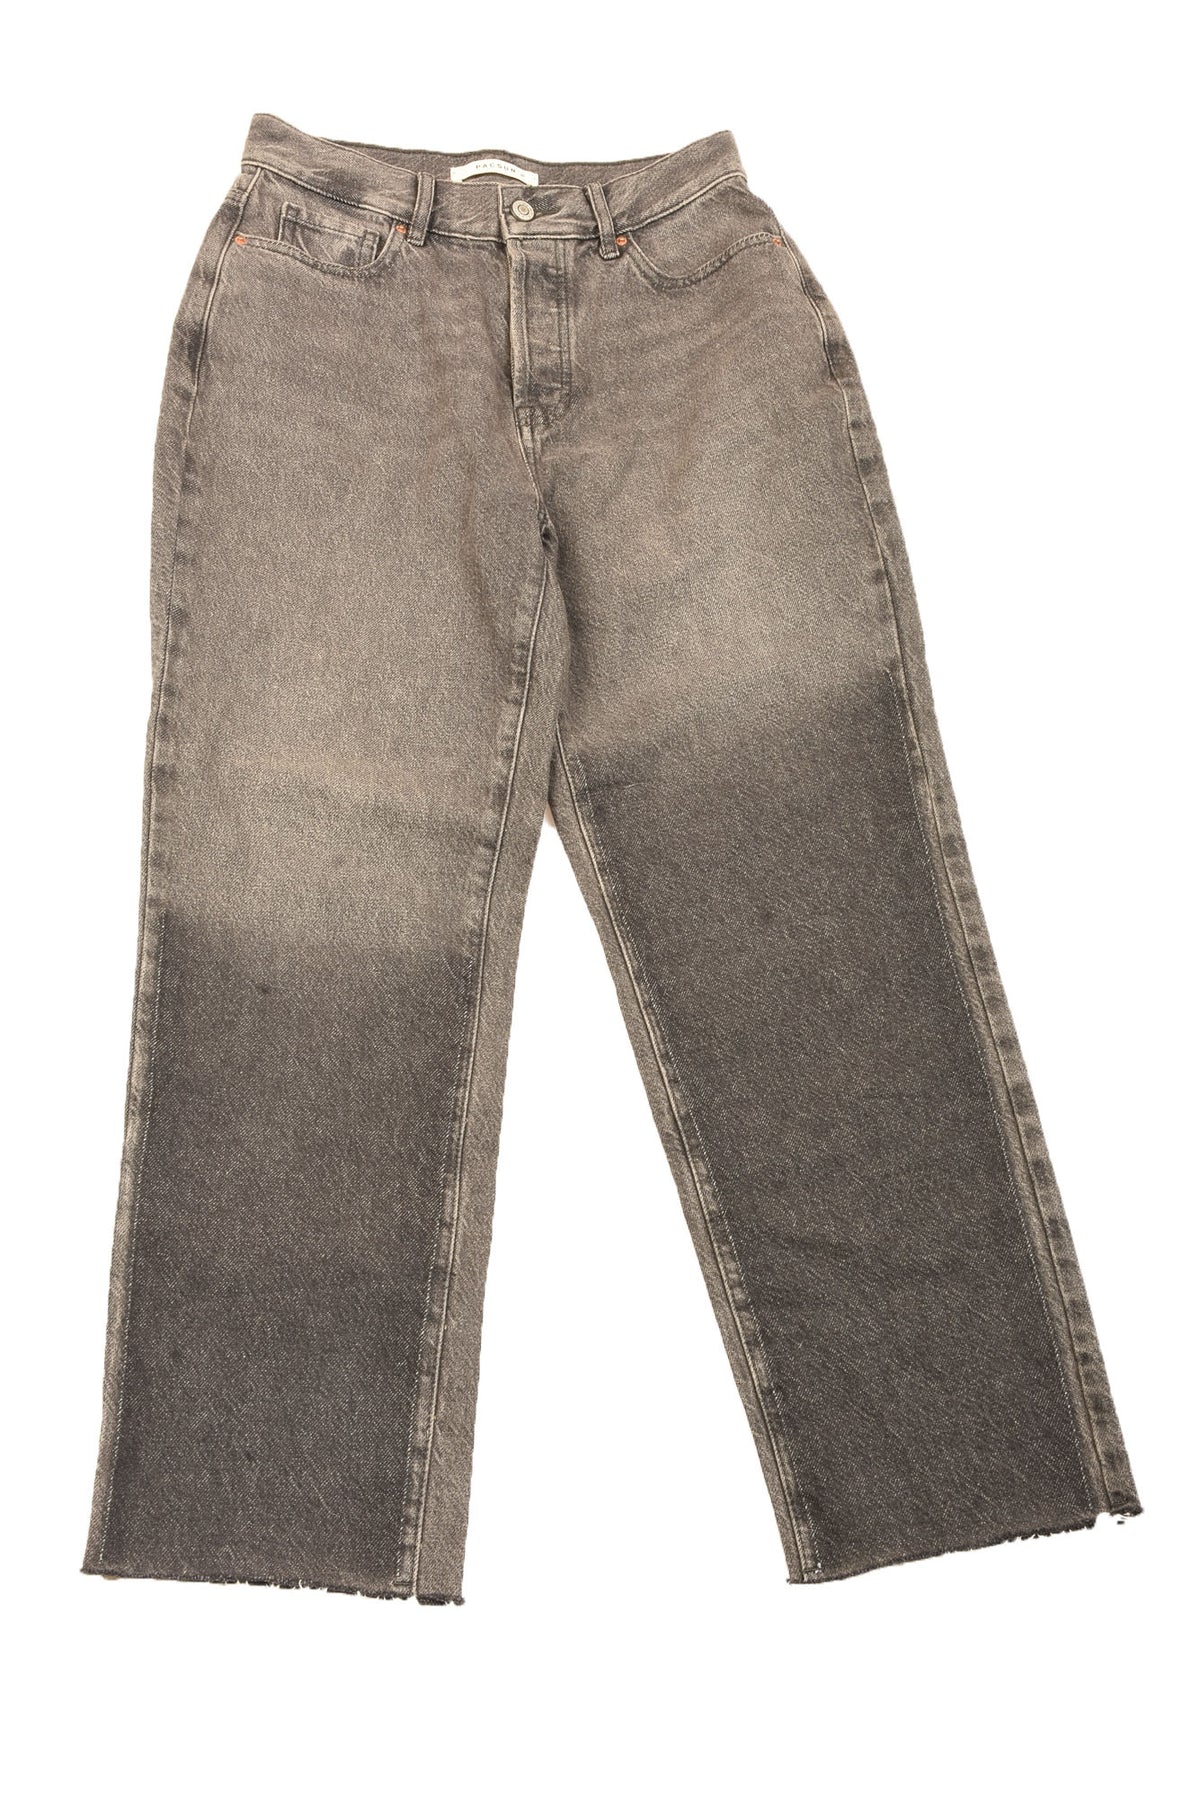 Pacsun Size 25 Women&#39;s Jeans